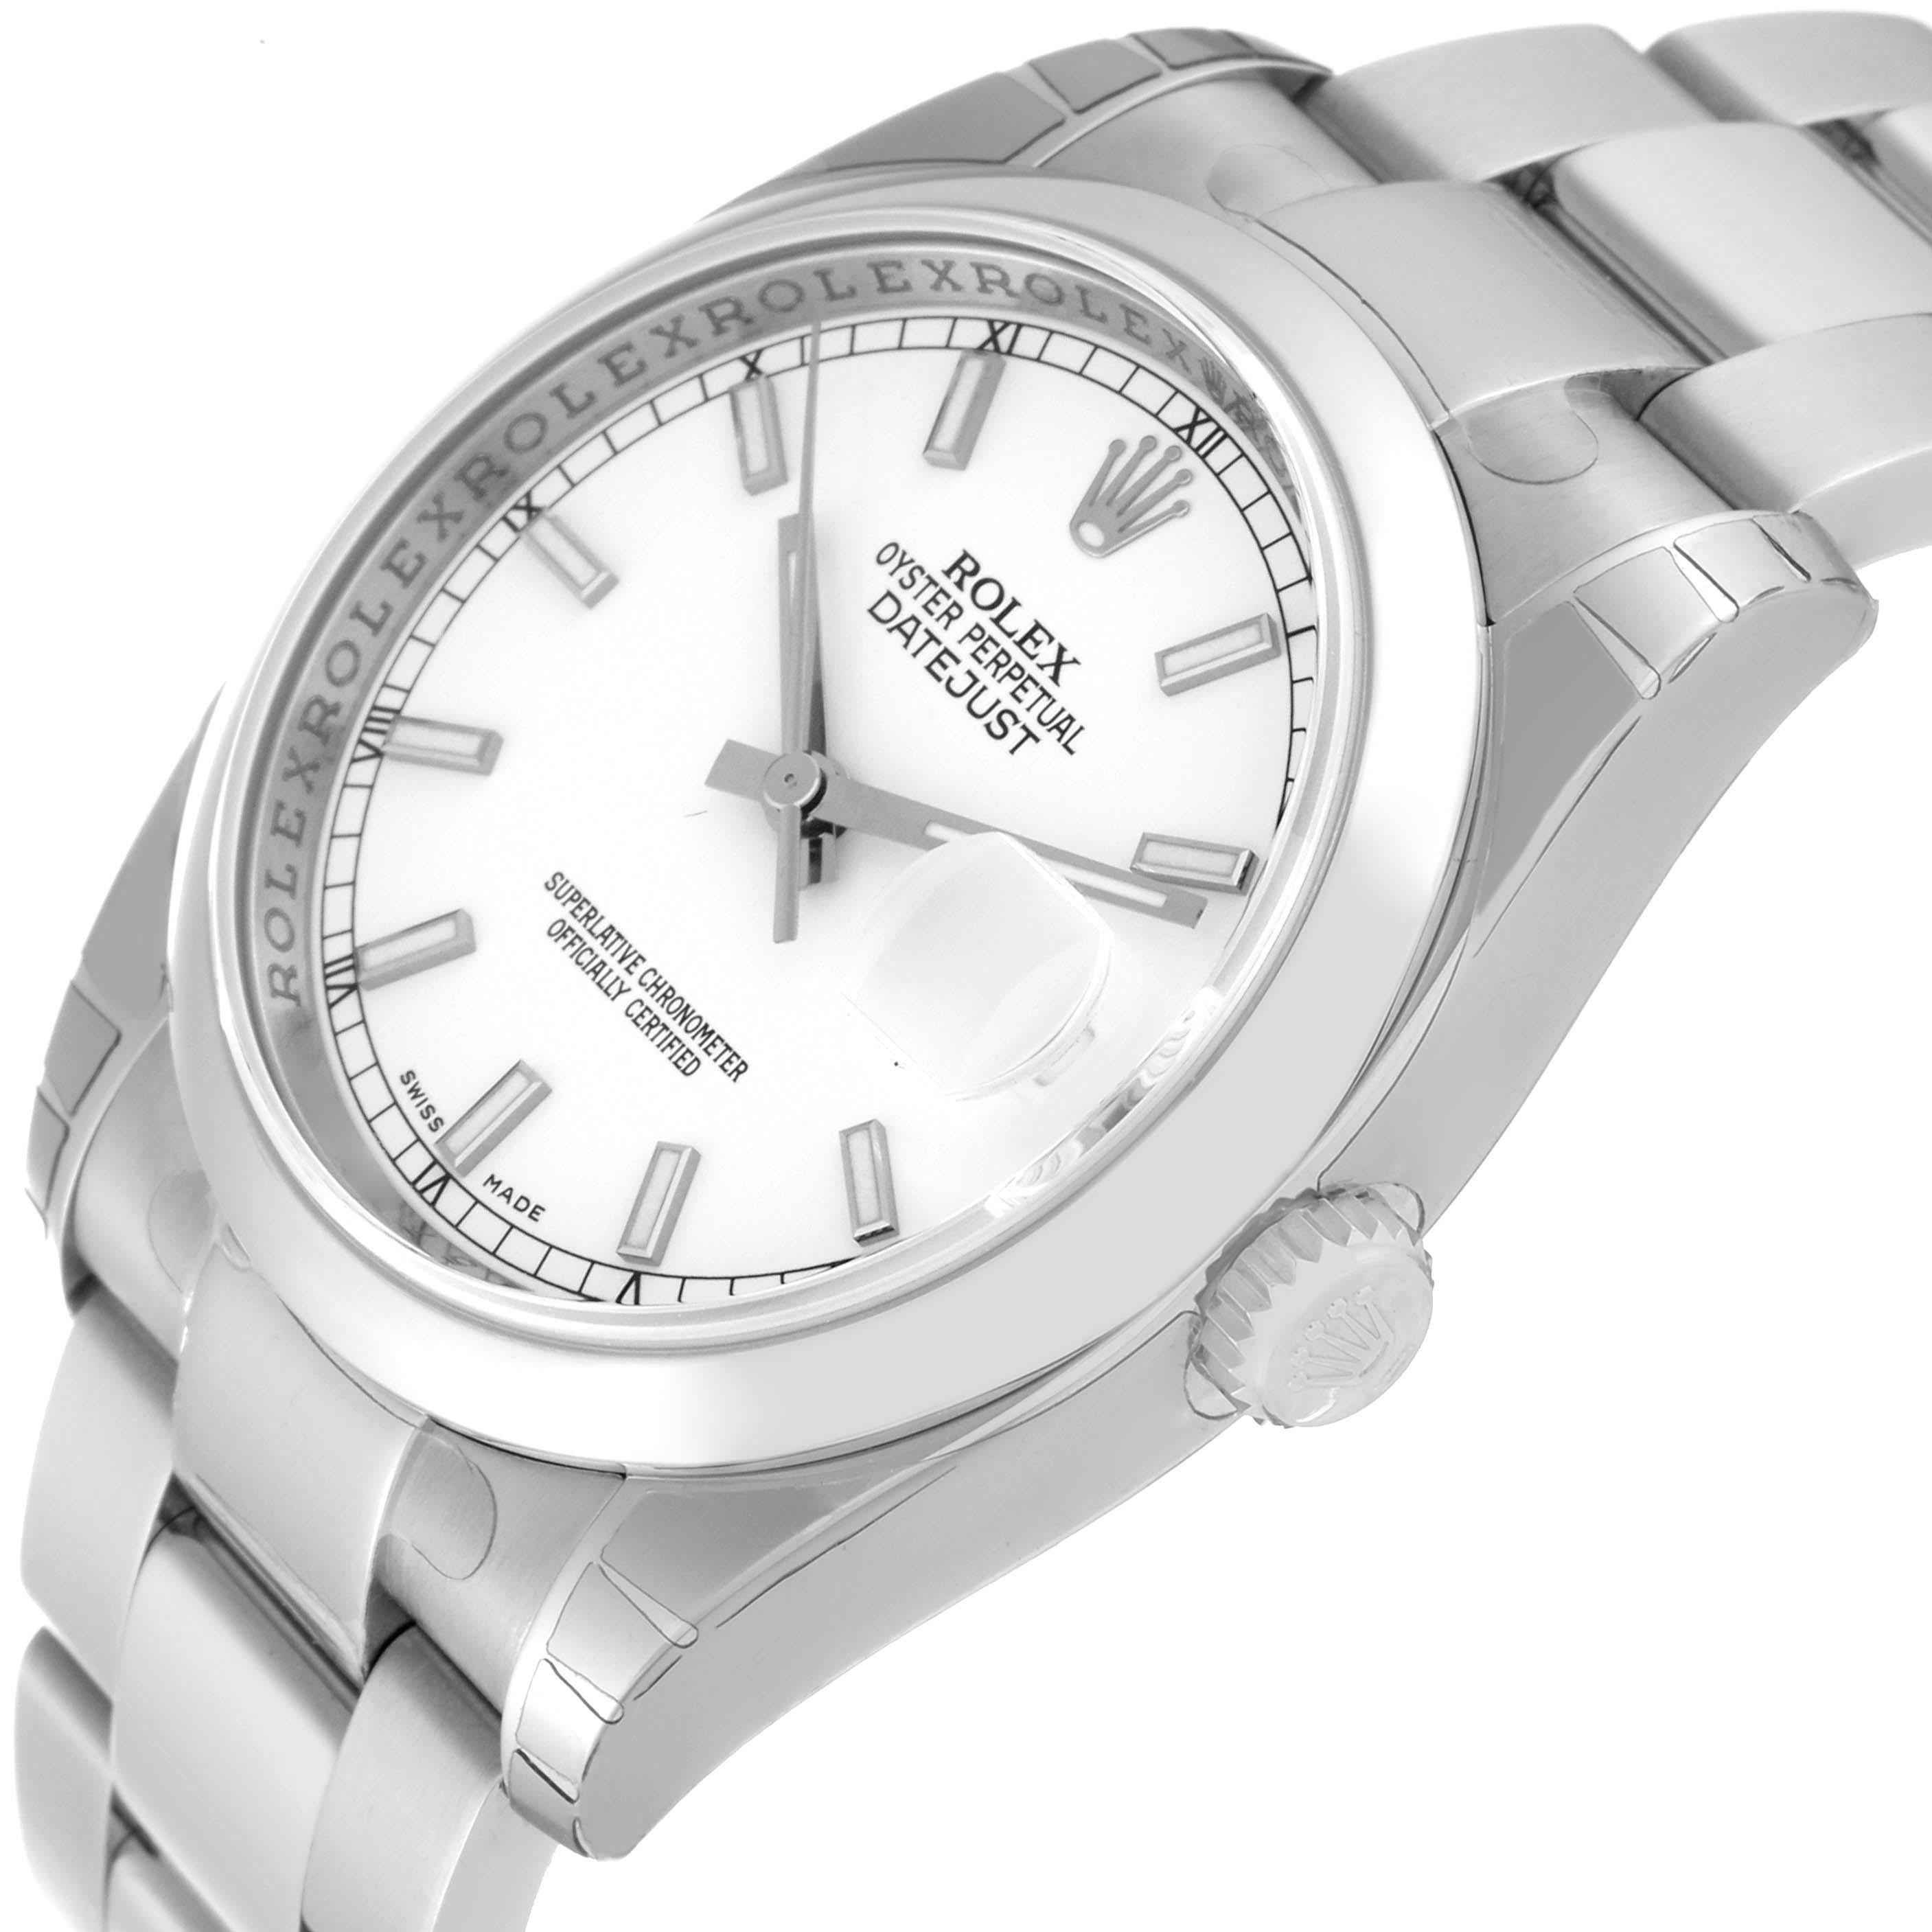 Rolex Datejust weißes Zifferblatt Oyster-Armband Stahl Herrenuhr 116200 ungetragen 6